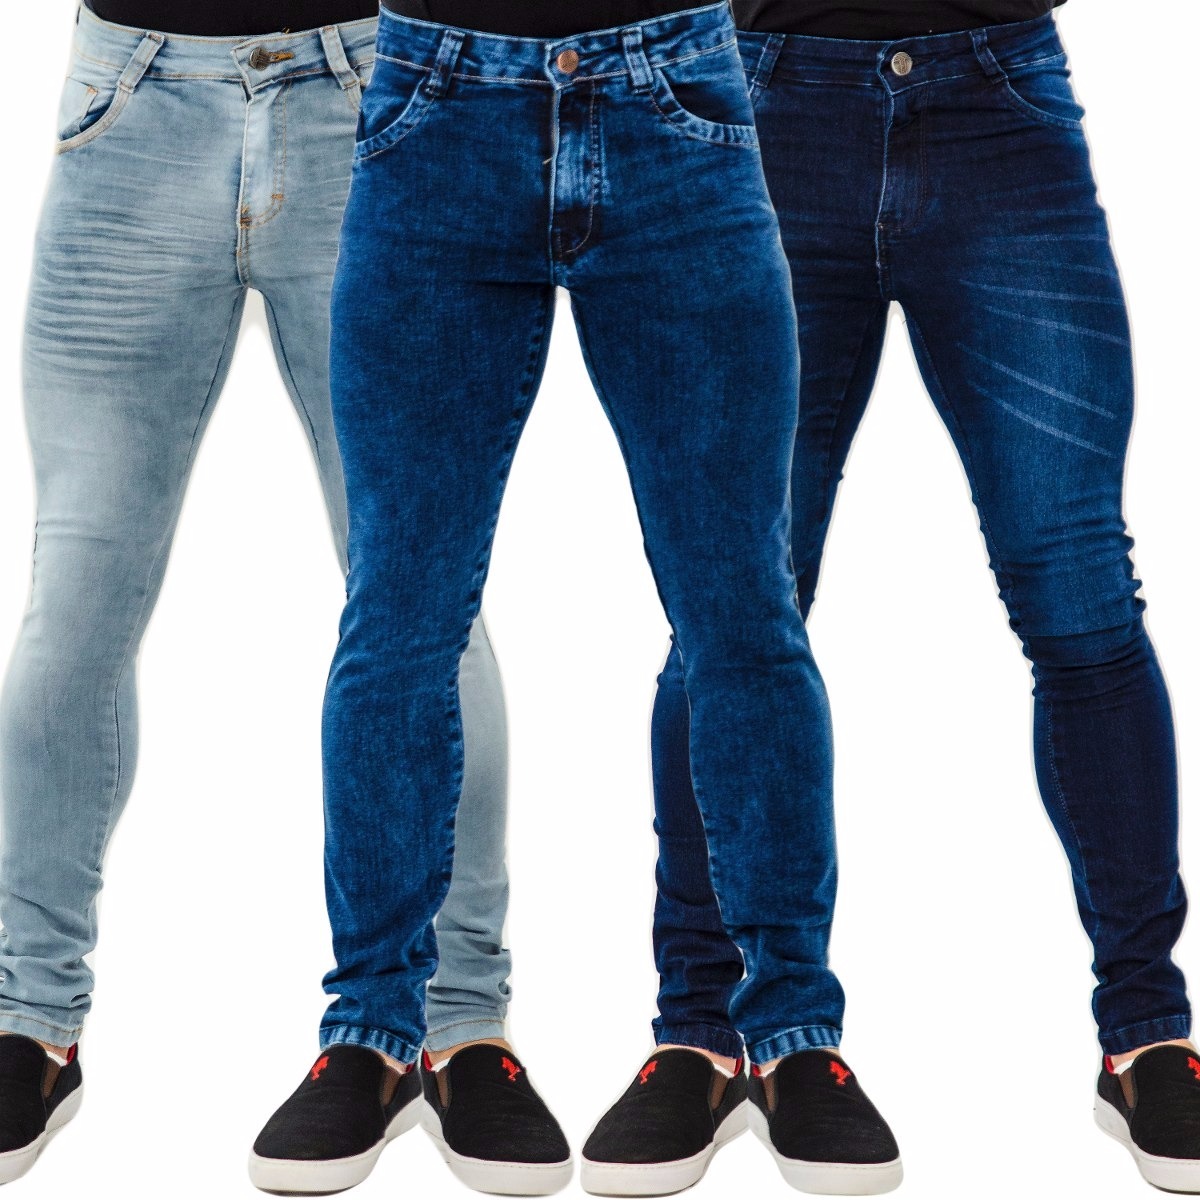 calça jeans masculina lycra stretch